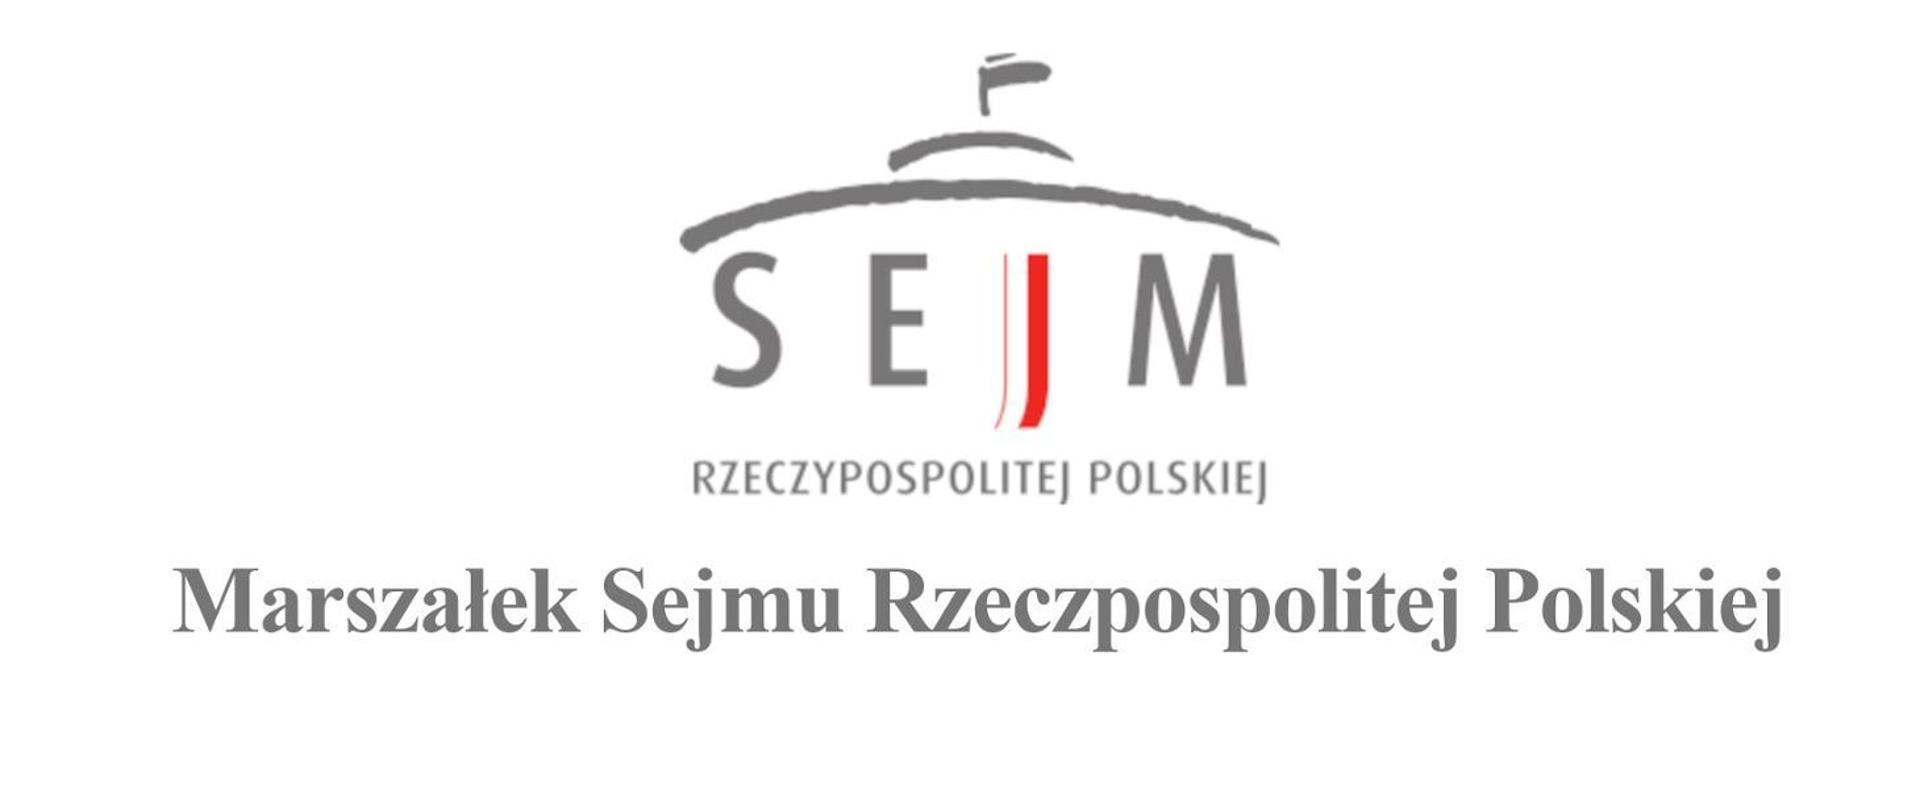 Ilustracja przestawia na białym tle logotyp sejmu, który składa się ze szkicu dachu budynku sejmu i napisu w kolorze szarym Sejm rzeczpospolitej Polskiej pod logotypem napis Marszałek Sejmu Rzeczpospolitej Polskiej